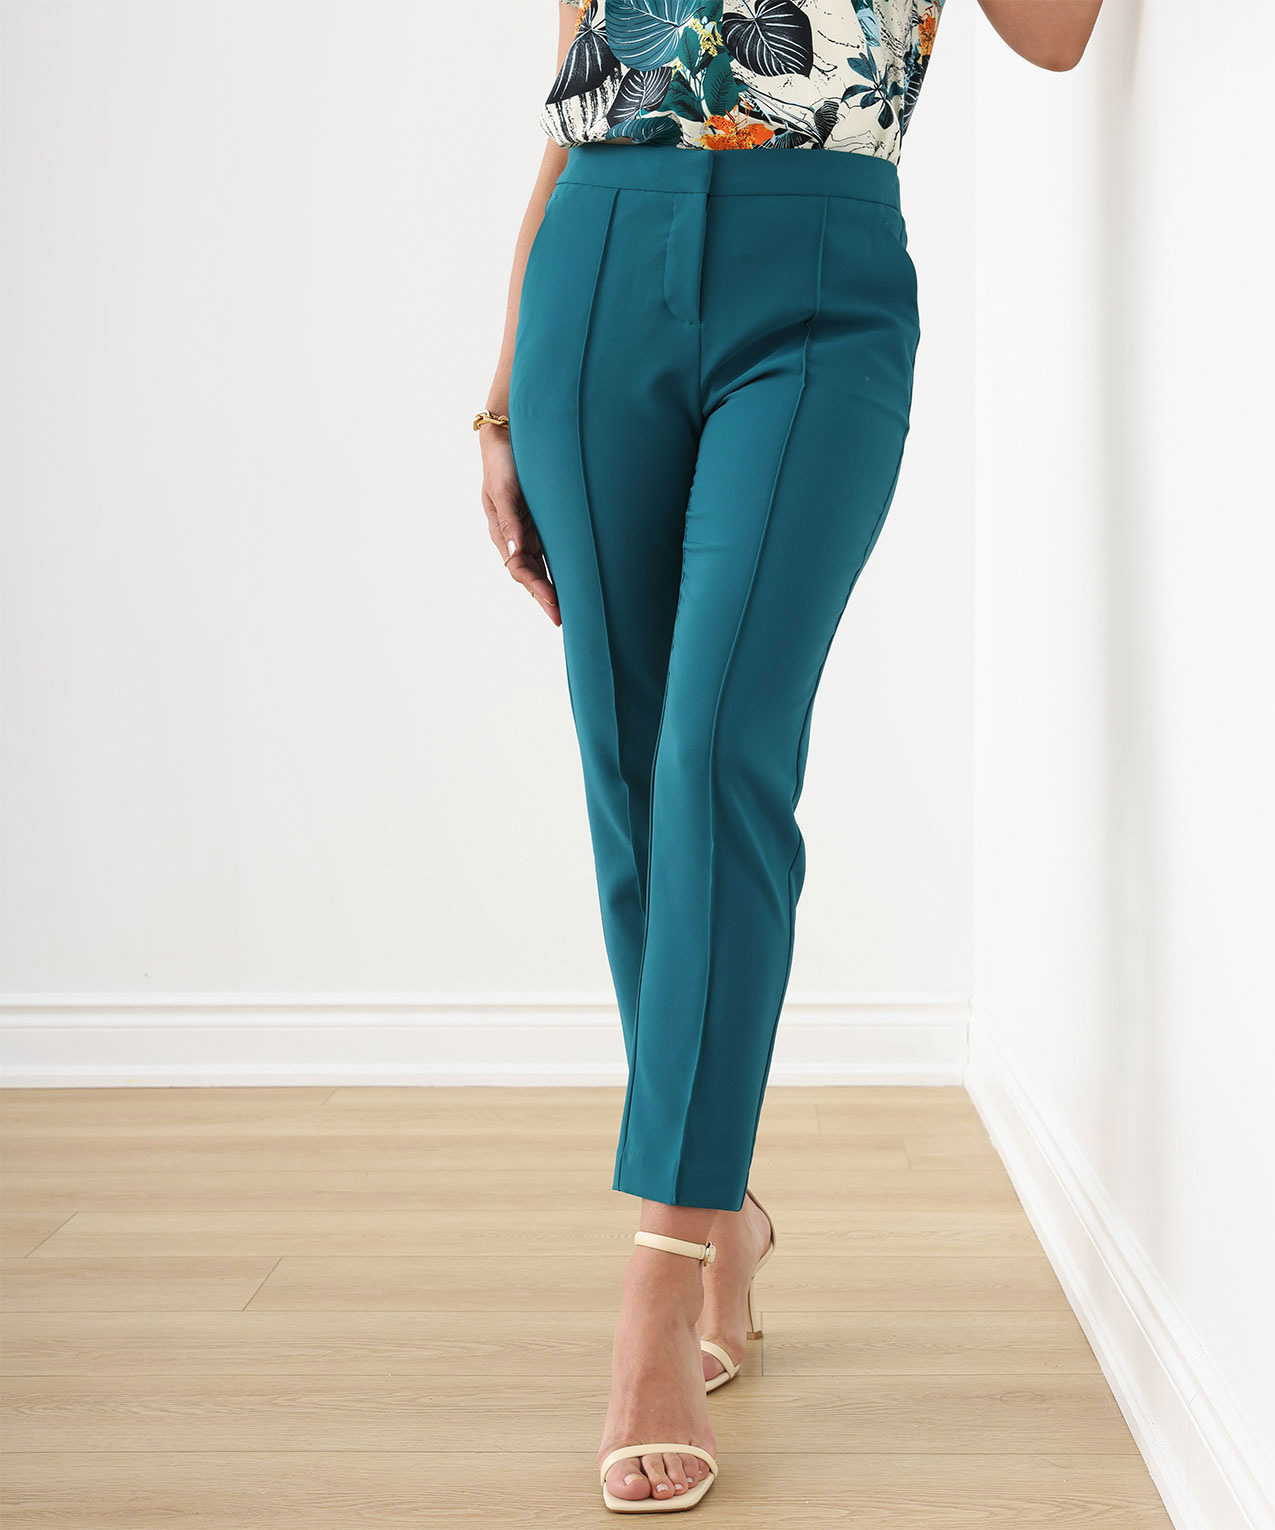 Buy Plus Size Teal Blue Cotton Blend Slim Pants Online - Shop for W